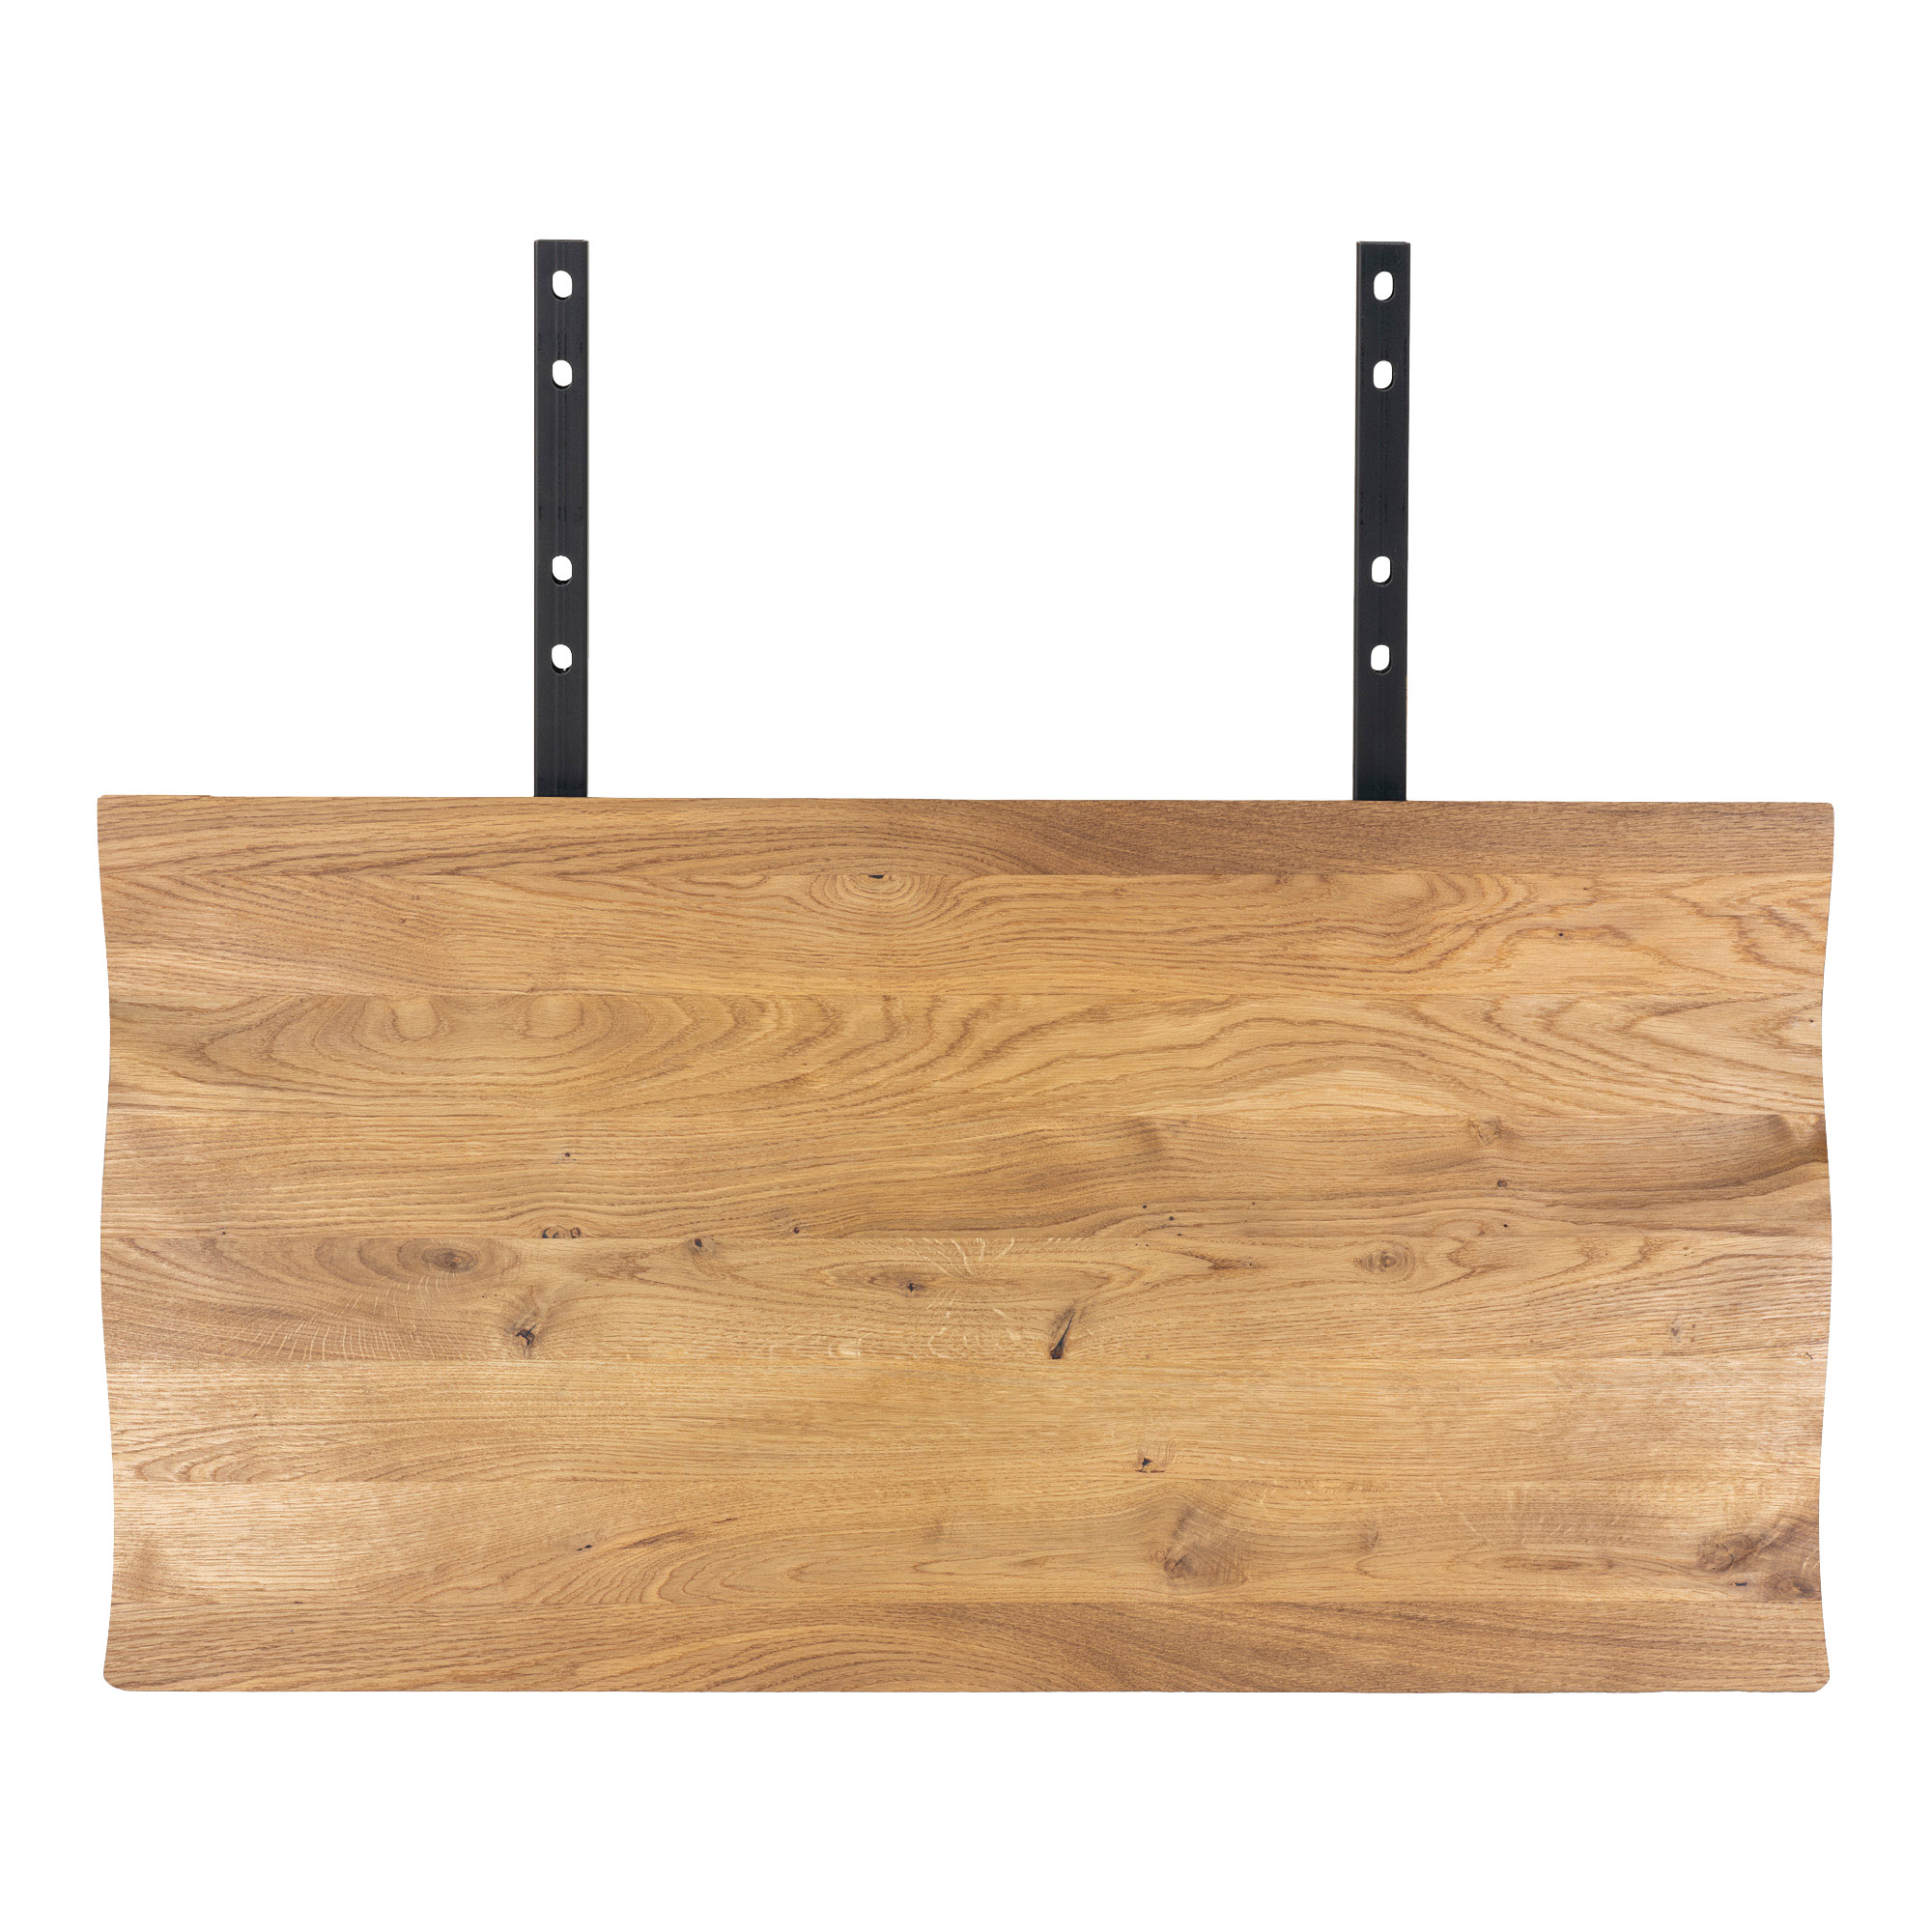 #2 - Juva - Spisebord i olieret  eg, 95 x 200 cm, med eller uden tillægsplader Med 2 tillægsplader